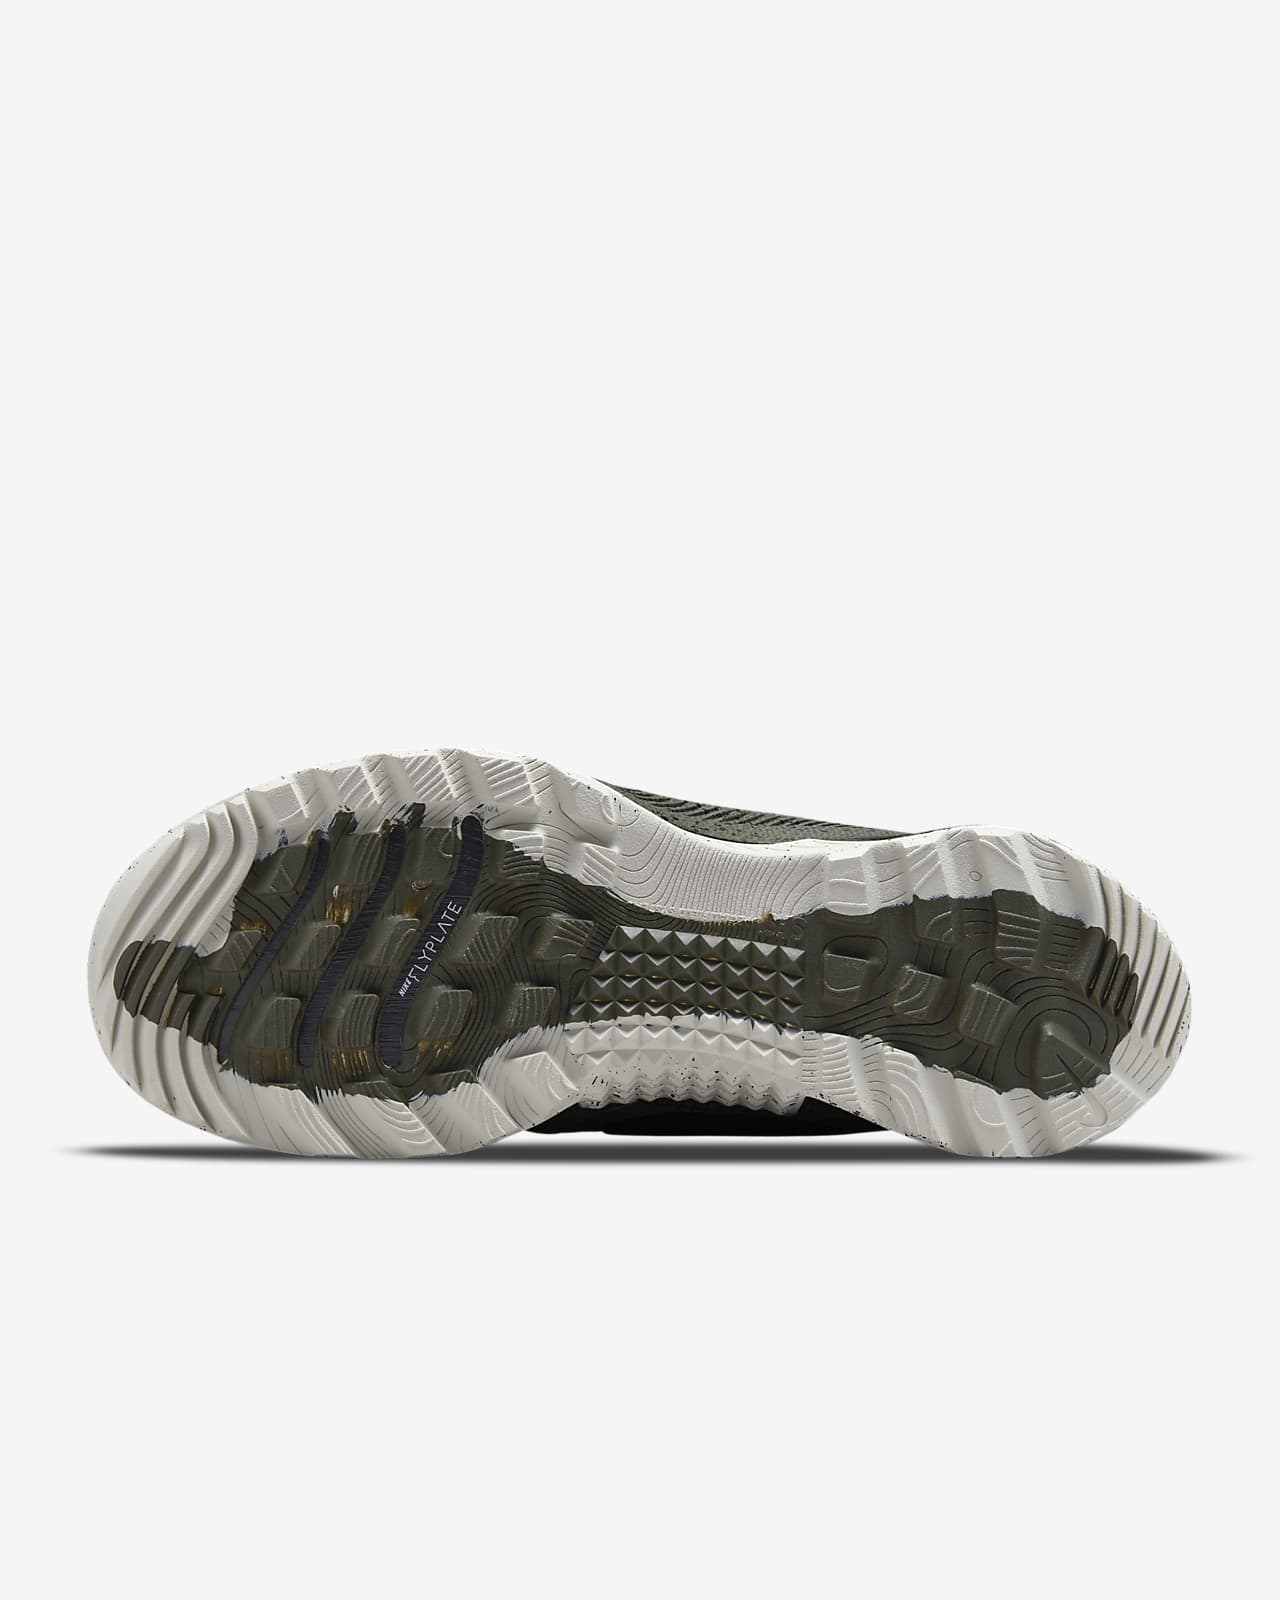 Nike React SFB Carbon Low Men’s Elite Outdoor Shoes